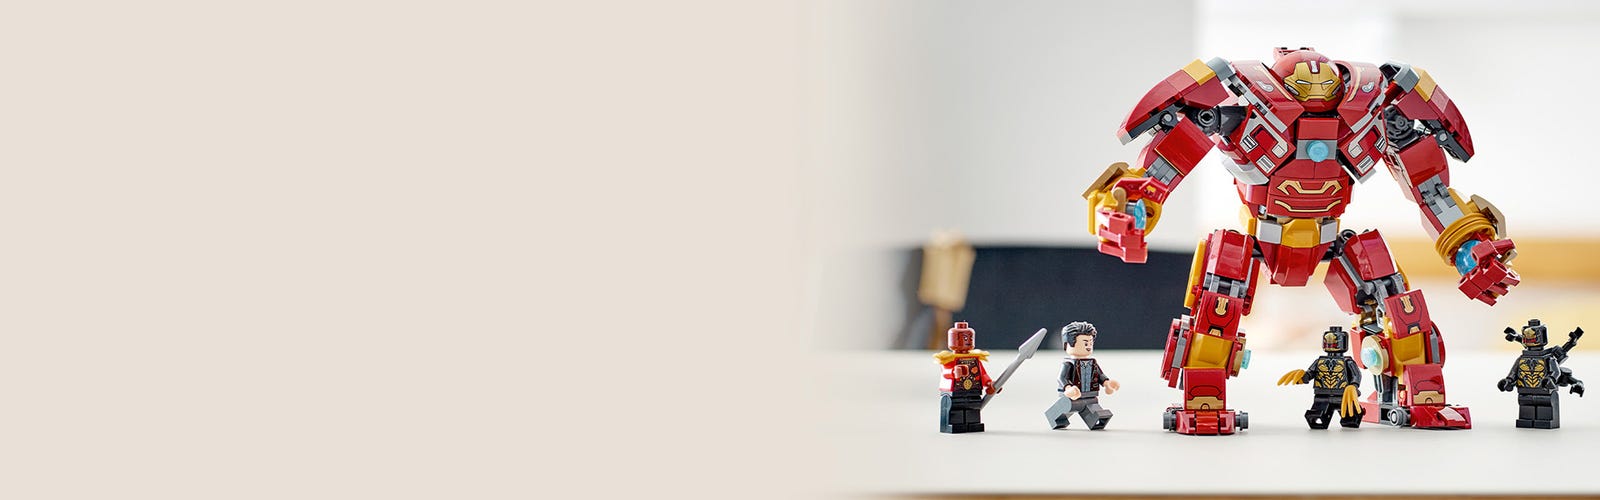 Uomo Del Ferro Dell'eroe Eccellente Di Lego Nel Hulkbuster